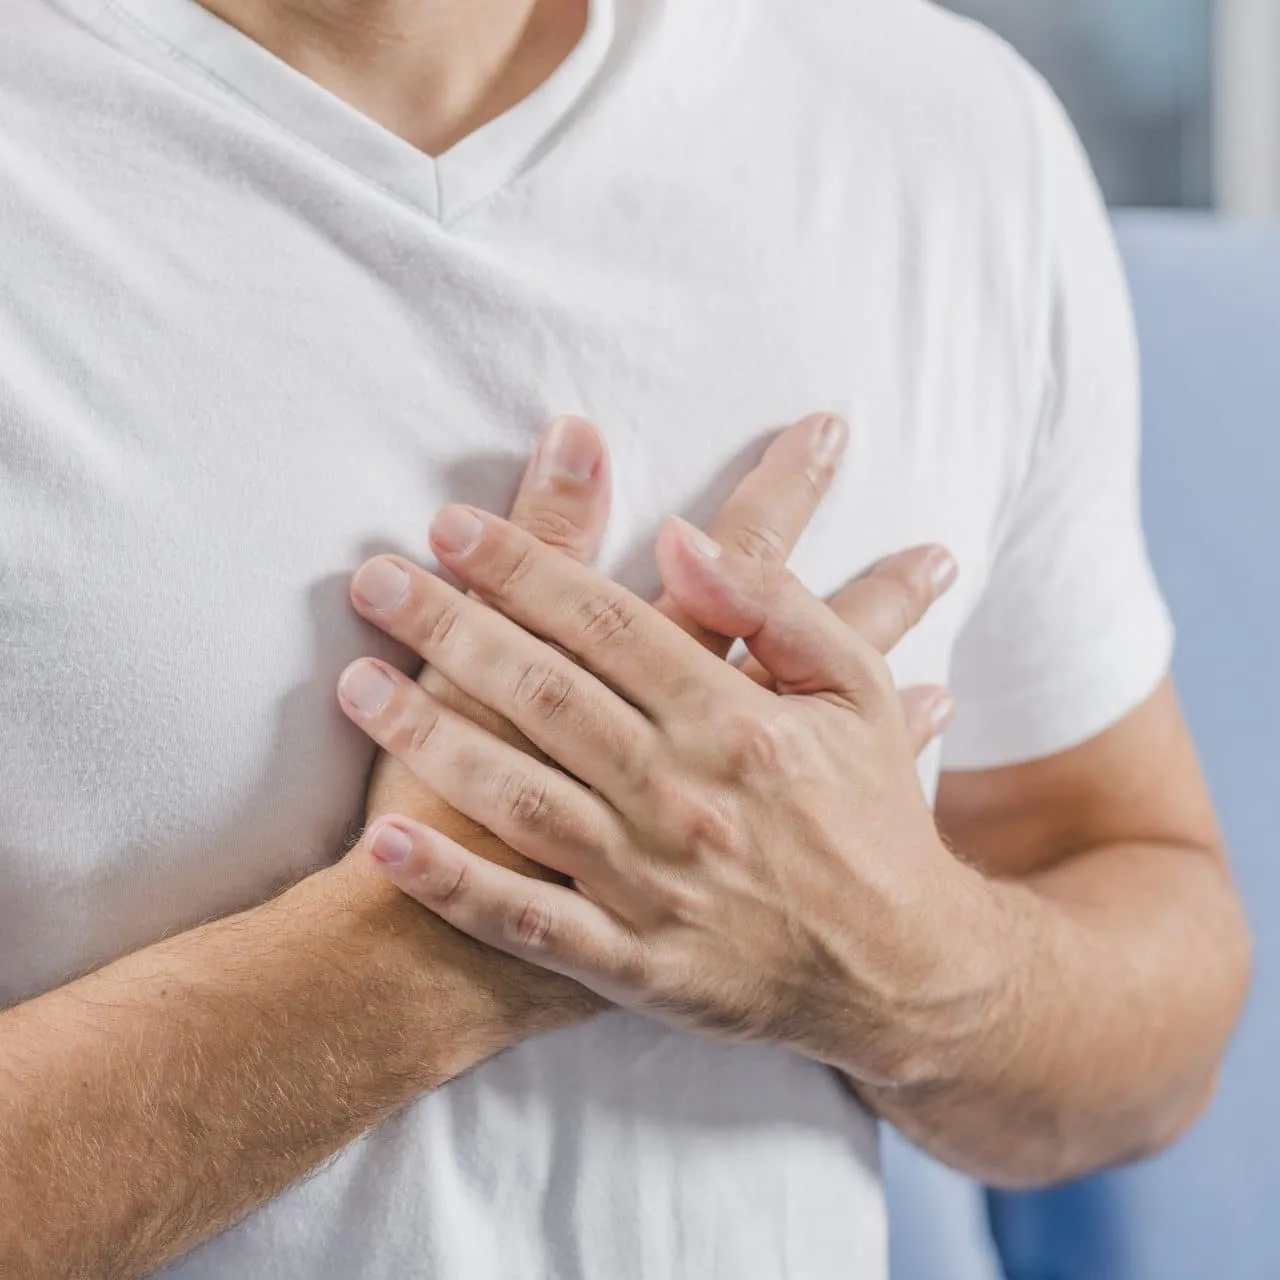 Bệnh nhân bị đau ngực thường được chẩn đoán dựa vào vị trí xuất hiện như đau ngực bên trái, đau ngực phải hoặc đau ngực diện rộng